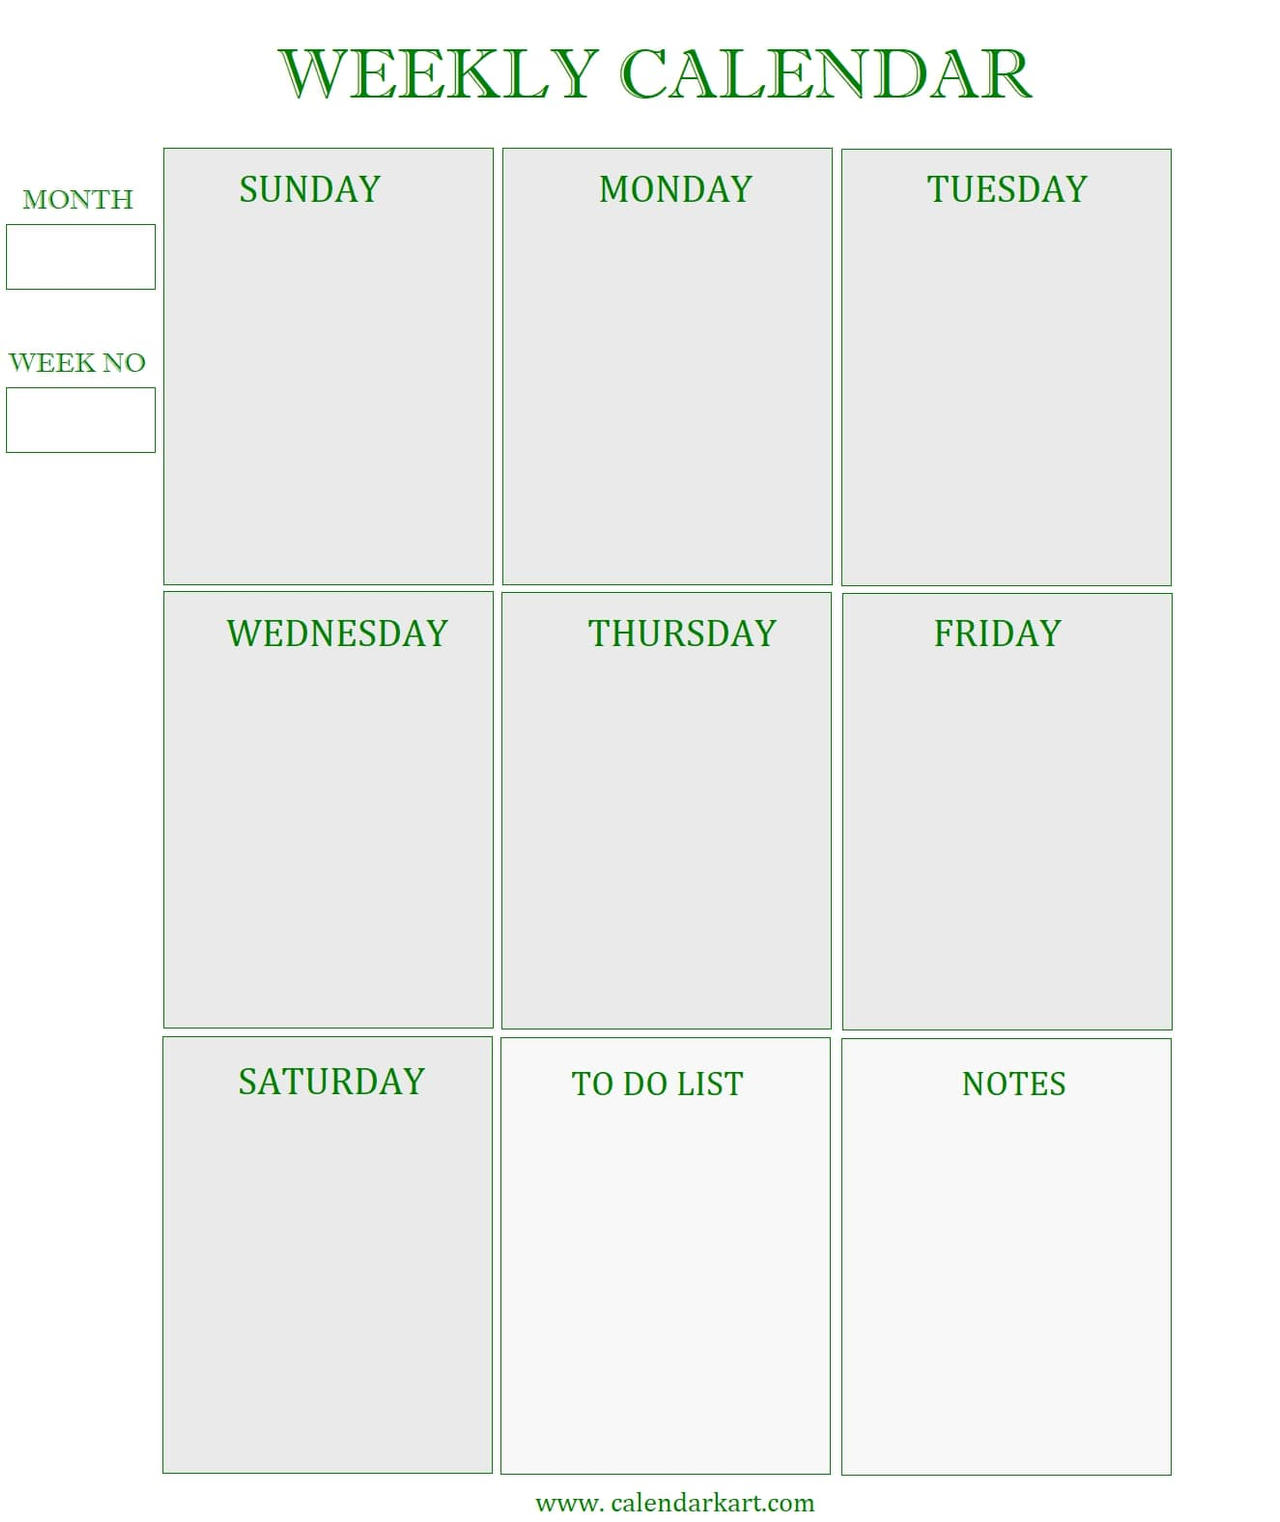 Weekly Calendar Template By Calendarkart On Deviantart